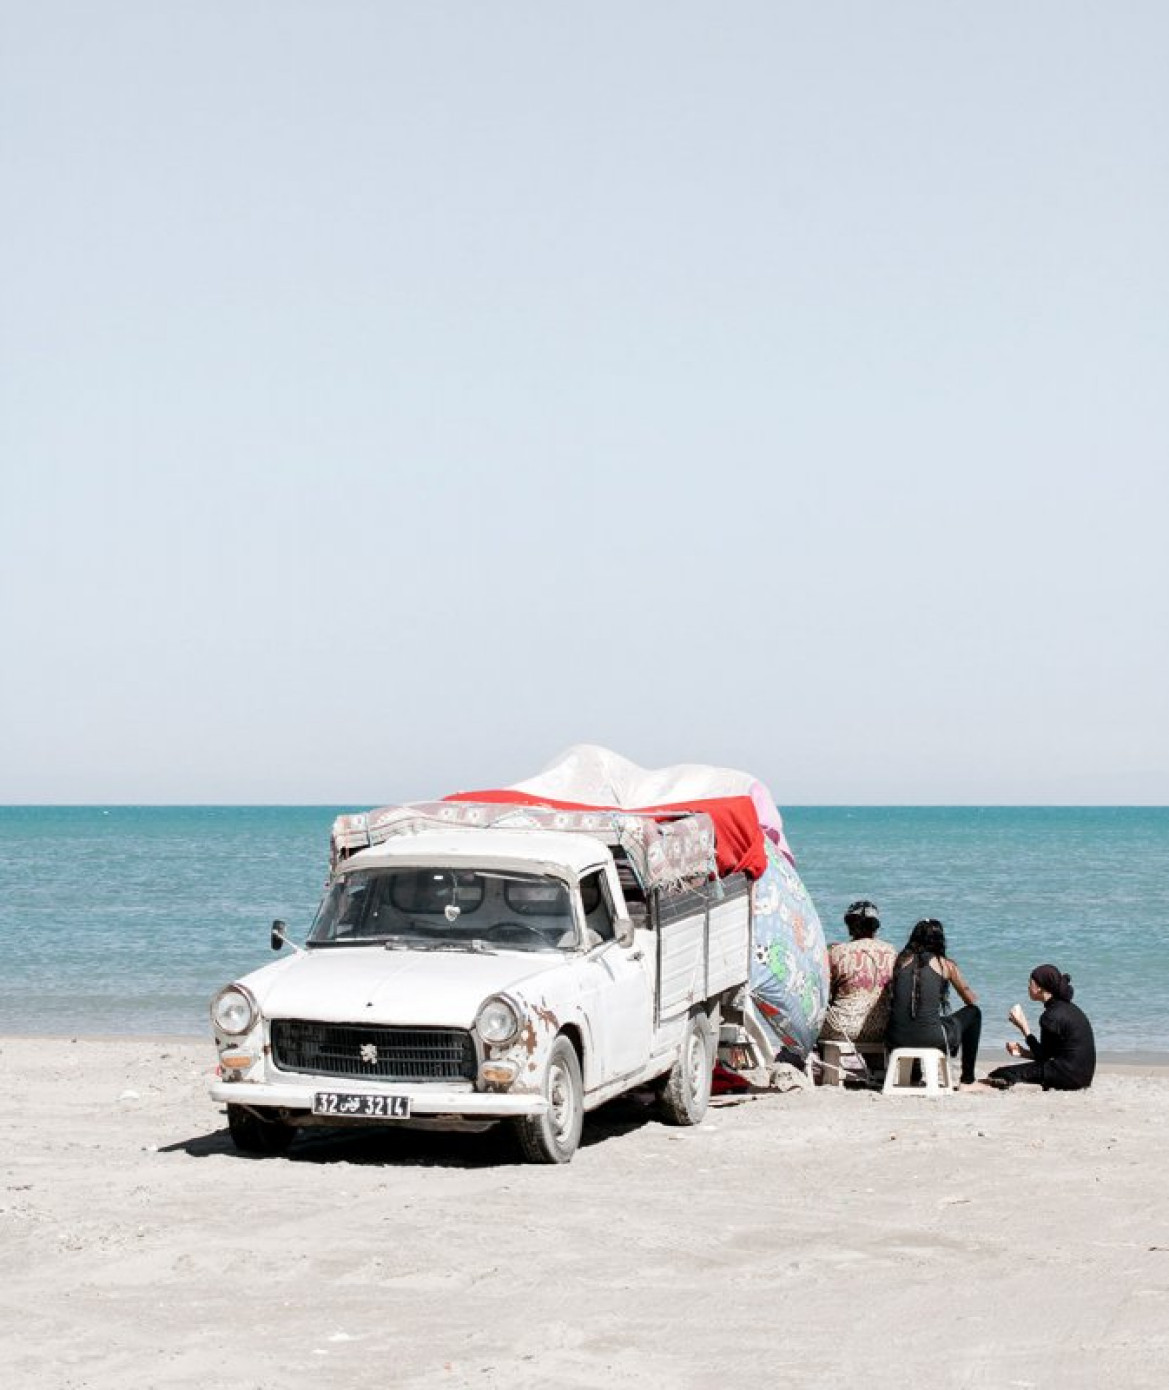 fot. Yoan Cimier, z cyklu "Nomad's Land"

Seria ukazuje ręcznie budowane schronienia i oraz namioty wznoszone przez ludność na wybrzeżu Tunezji. Skojarzenia z nomadycznymi ludami afryki nadawać mają całości poetyckiego charakteru.